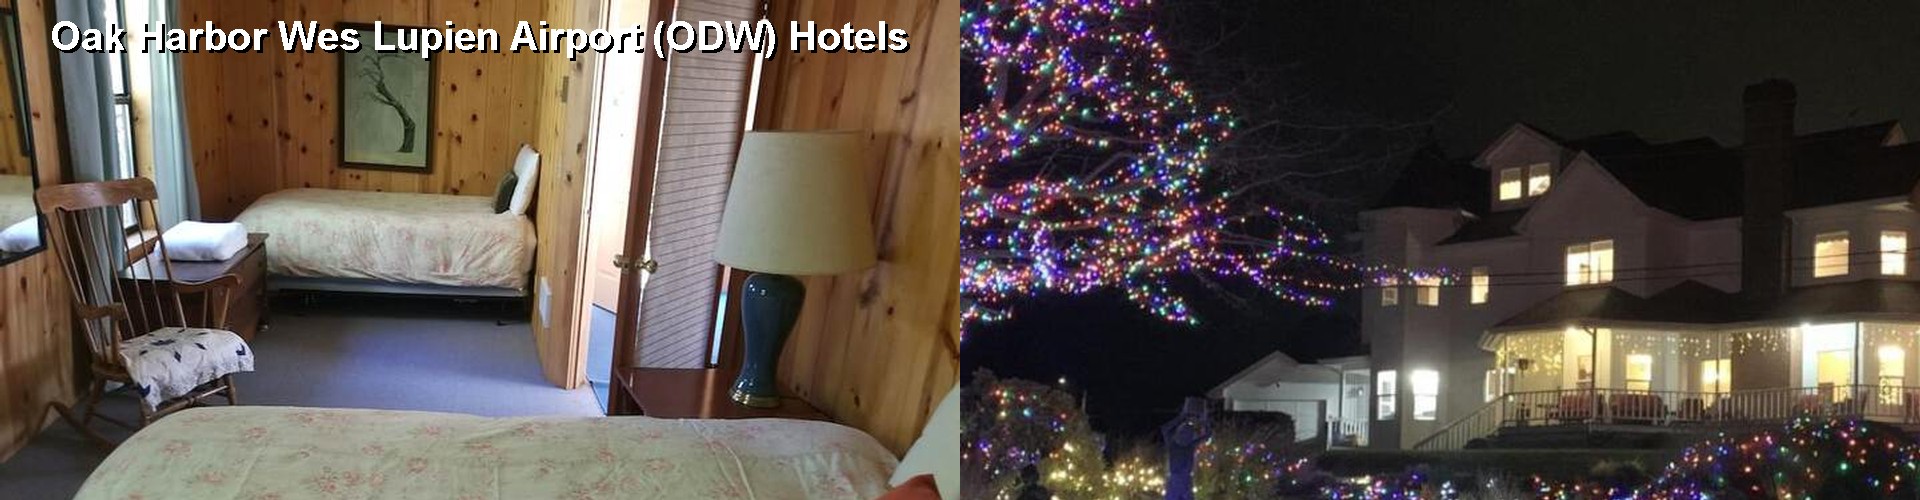 5 Best Hotels near Oak Harbor Wes Lupien Airport (ODW)